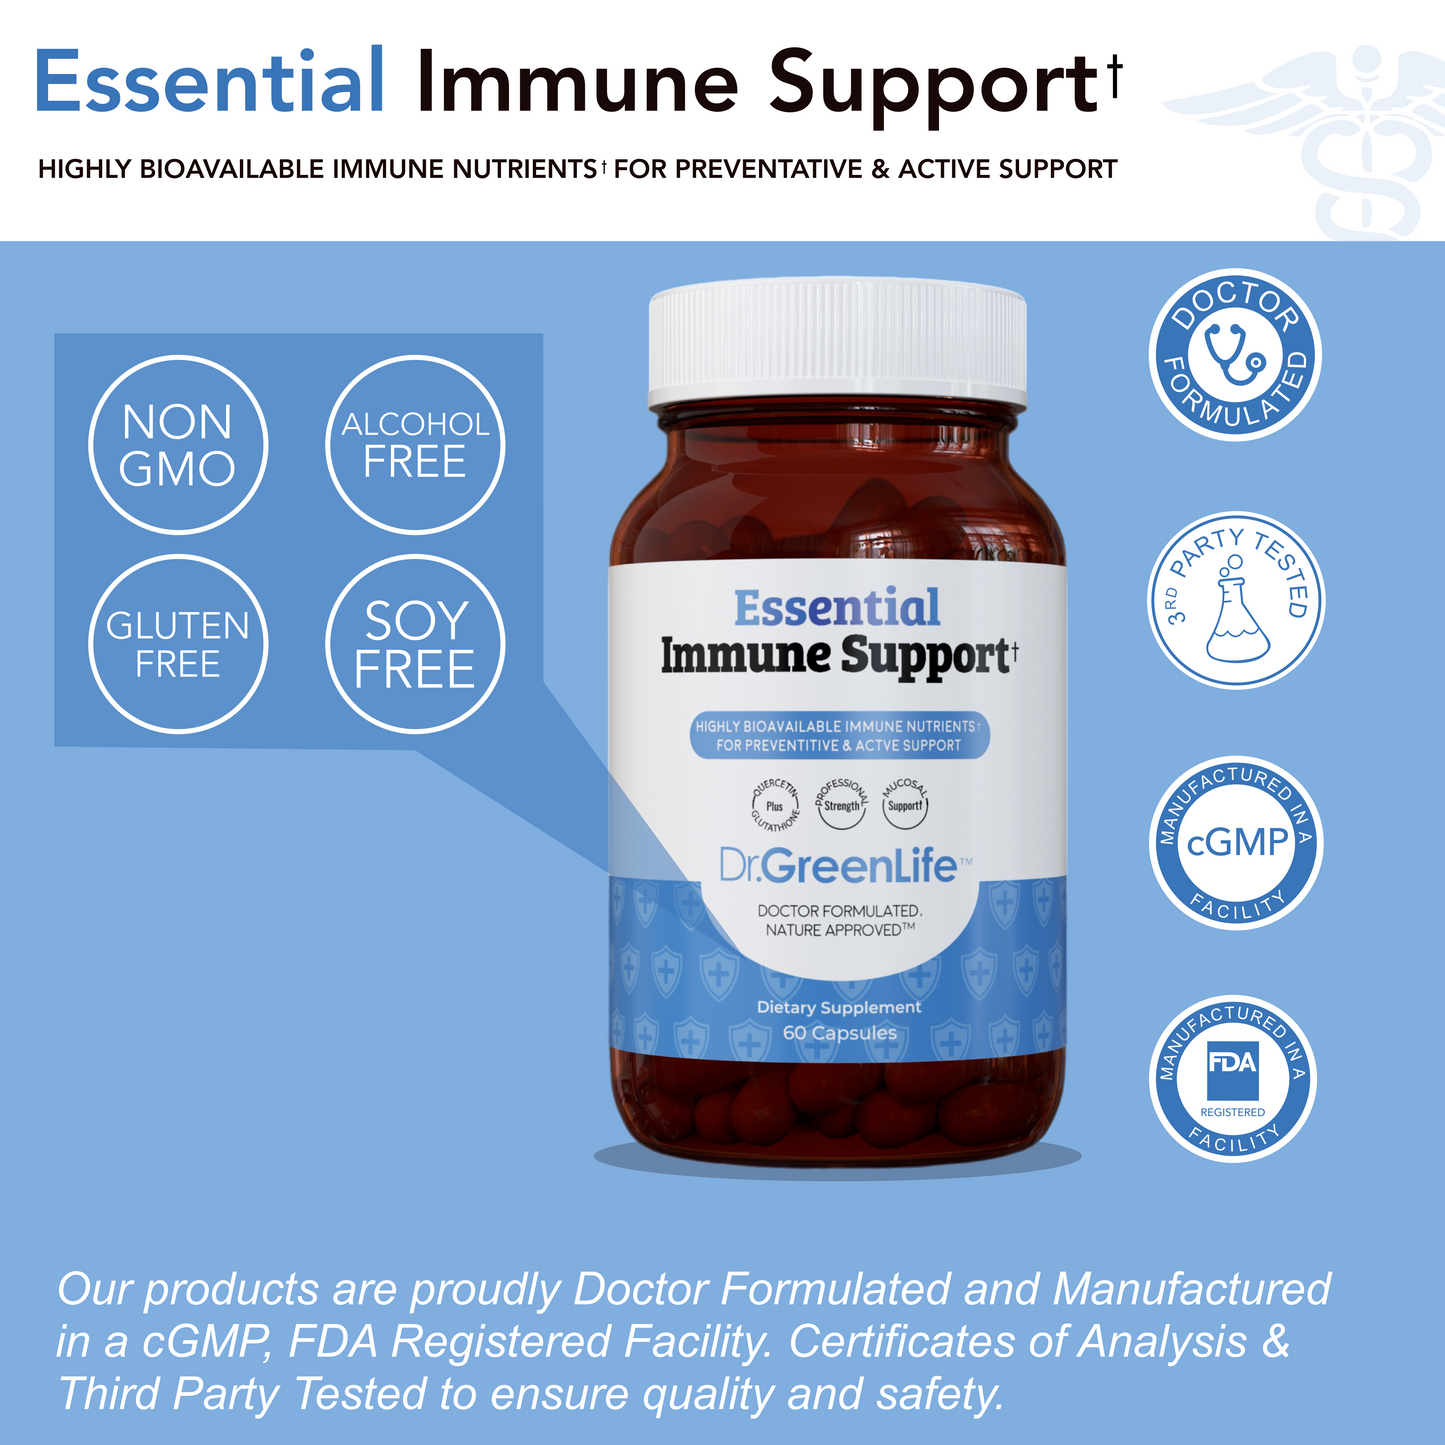 Essential Immune Support™